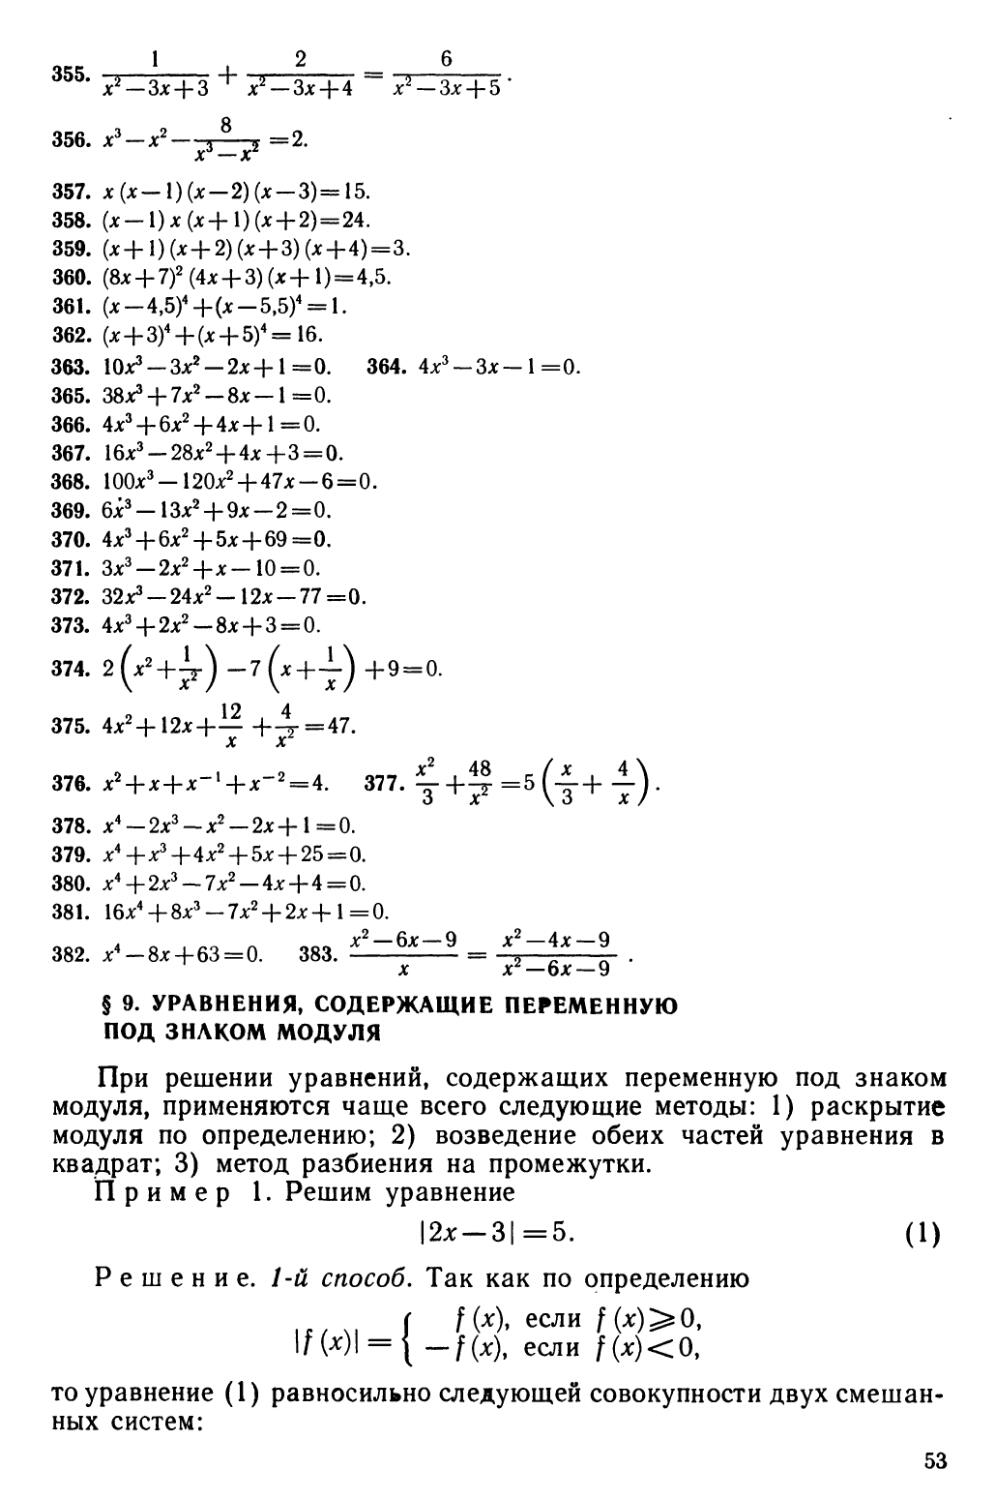 § 9 Уравнения, содержащие переменную под знаком модуля